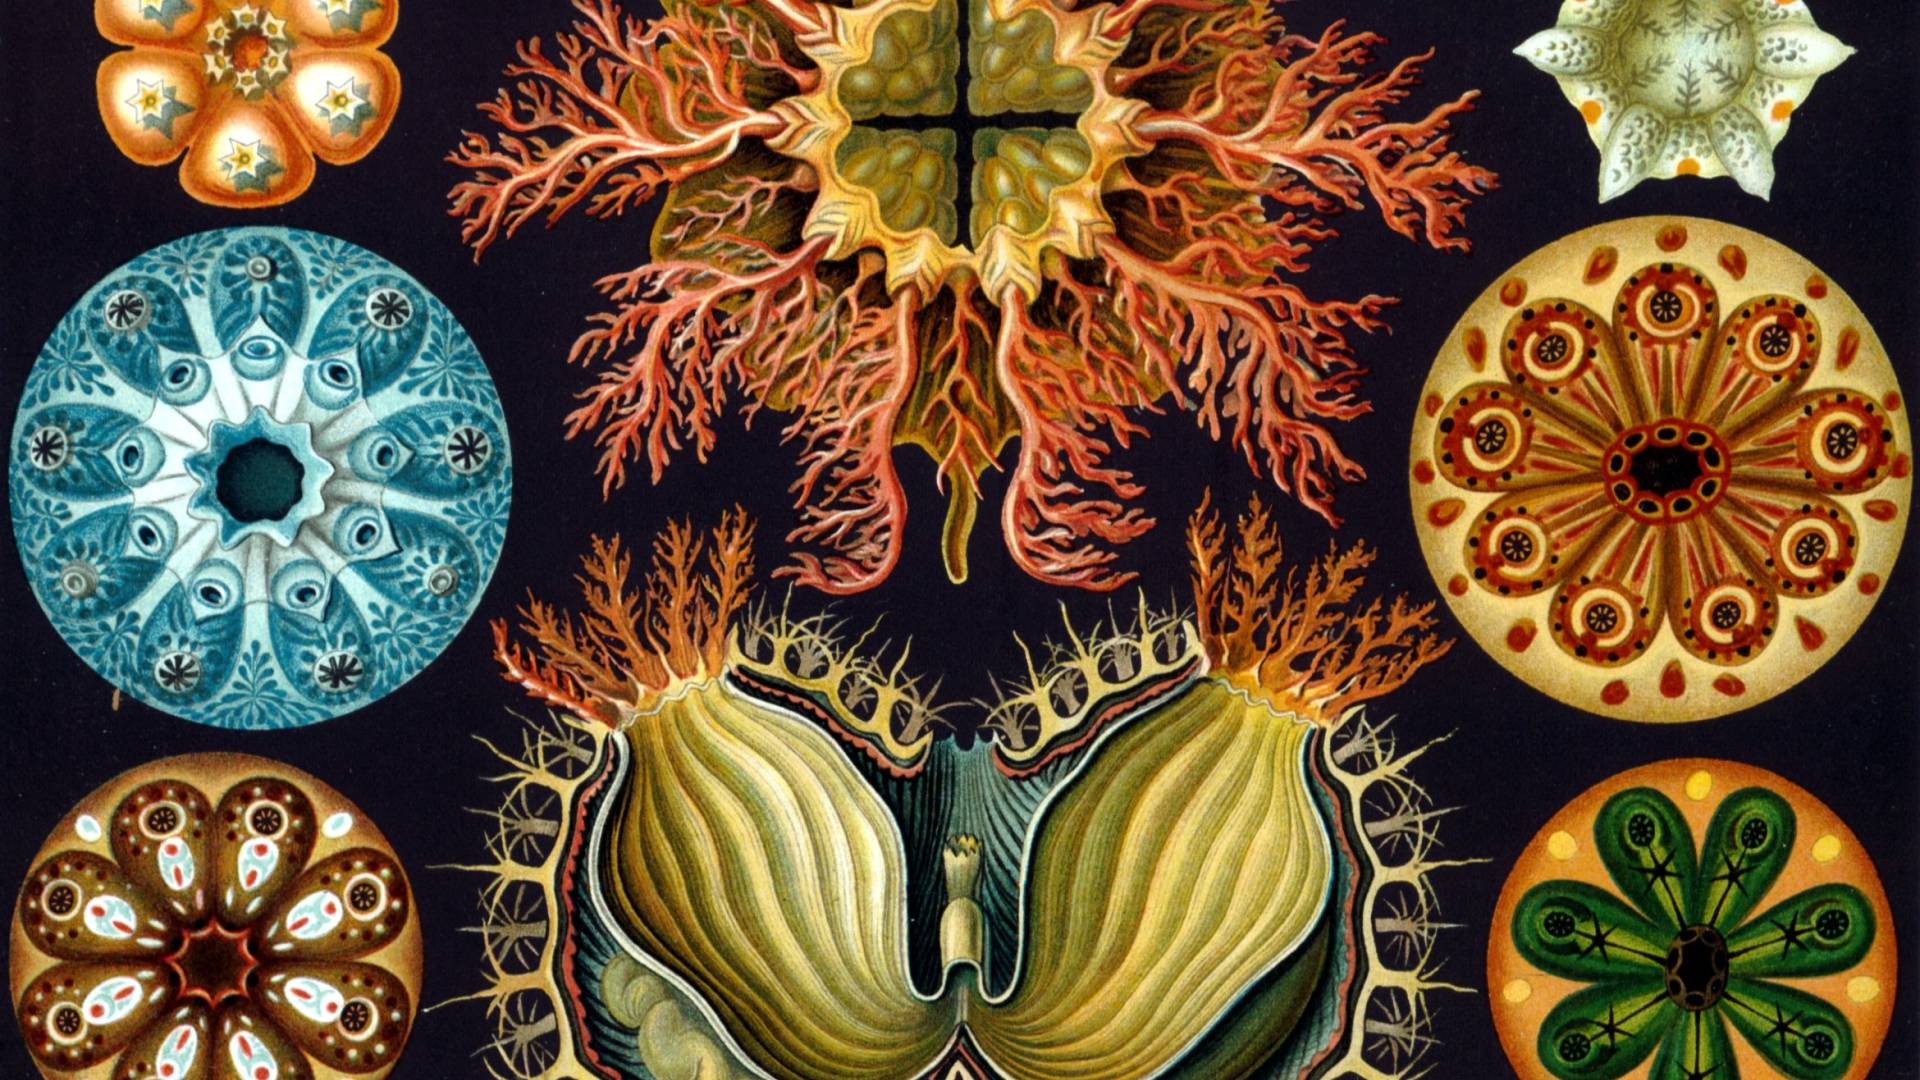 Scientific illustration by Ernst Haeckel